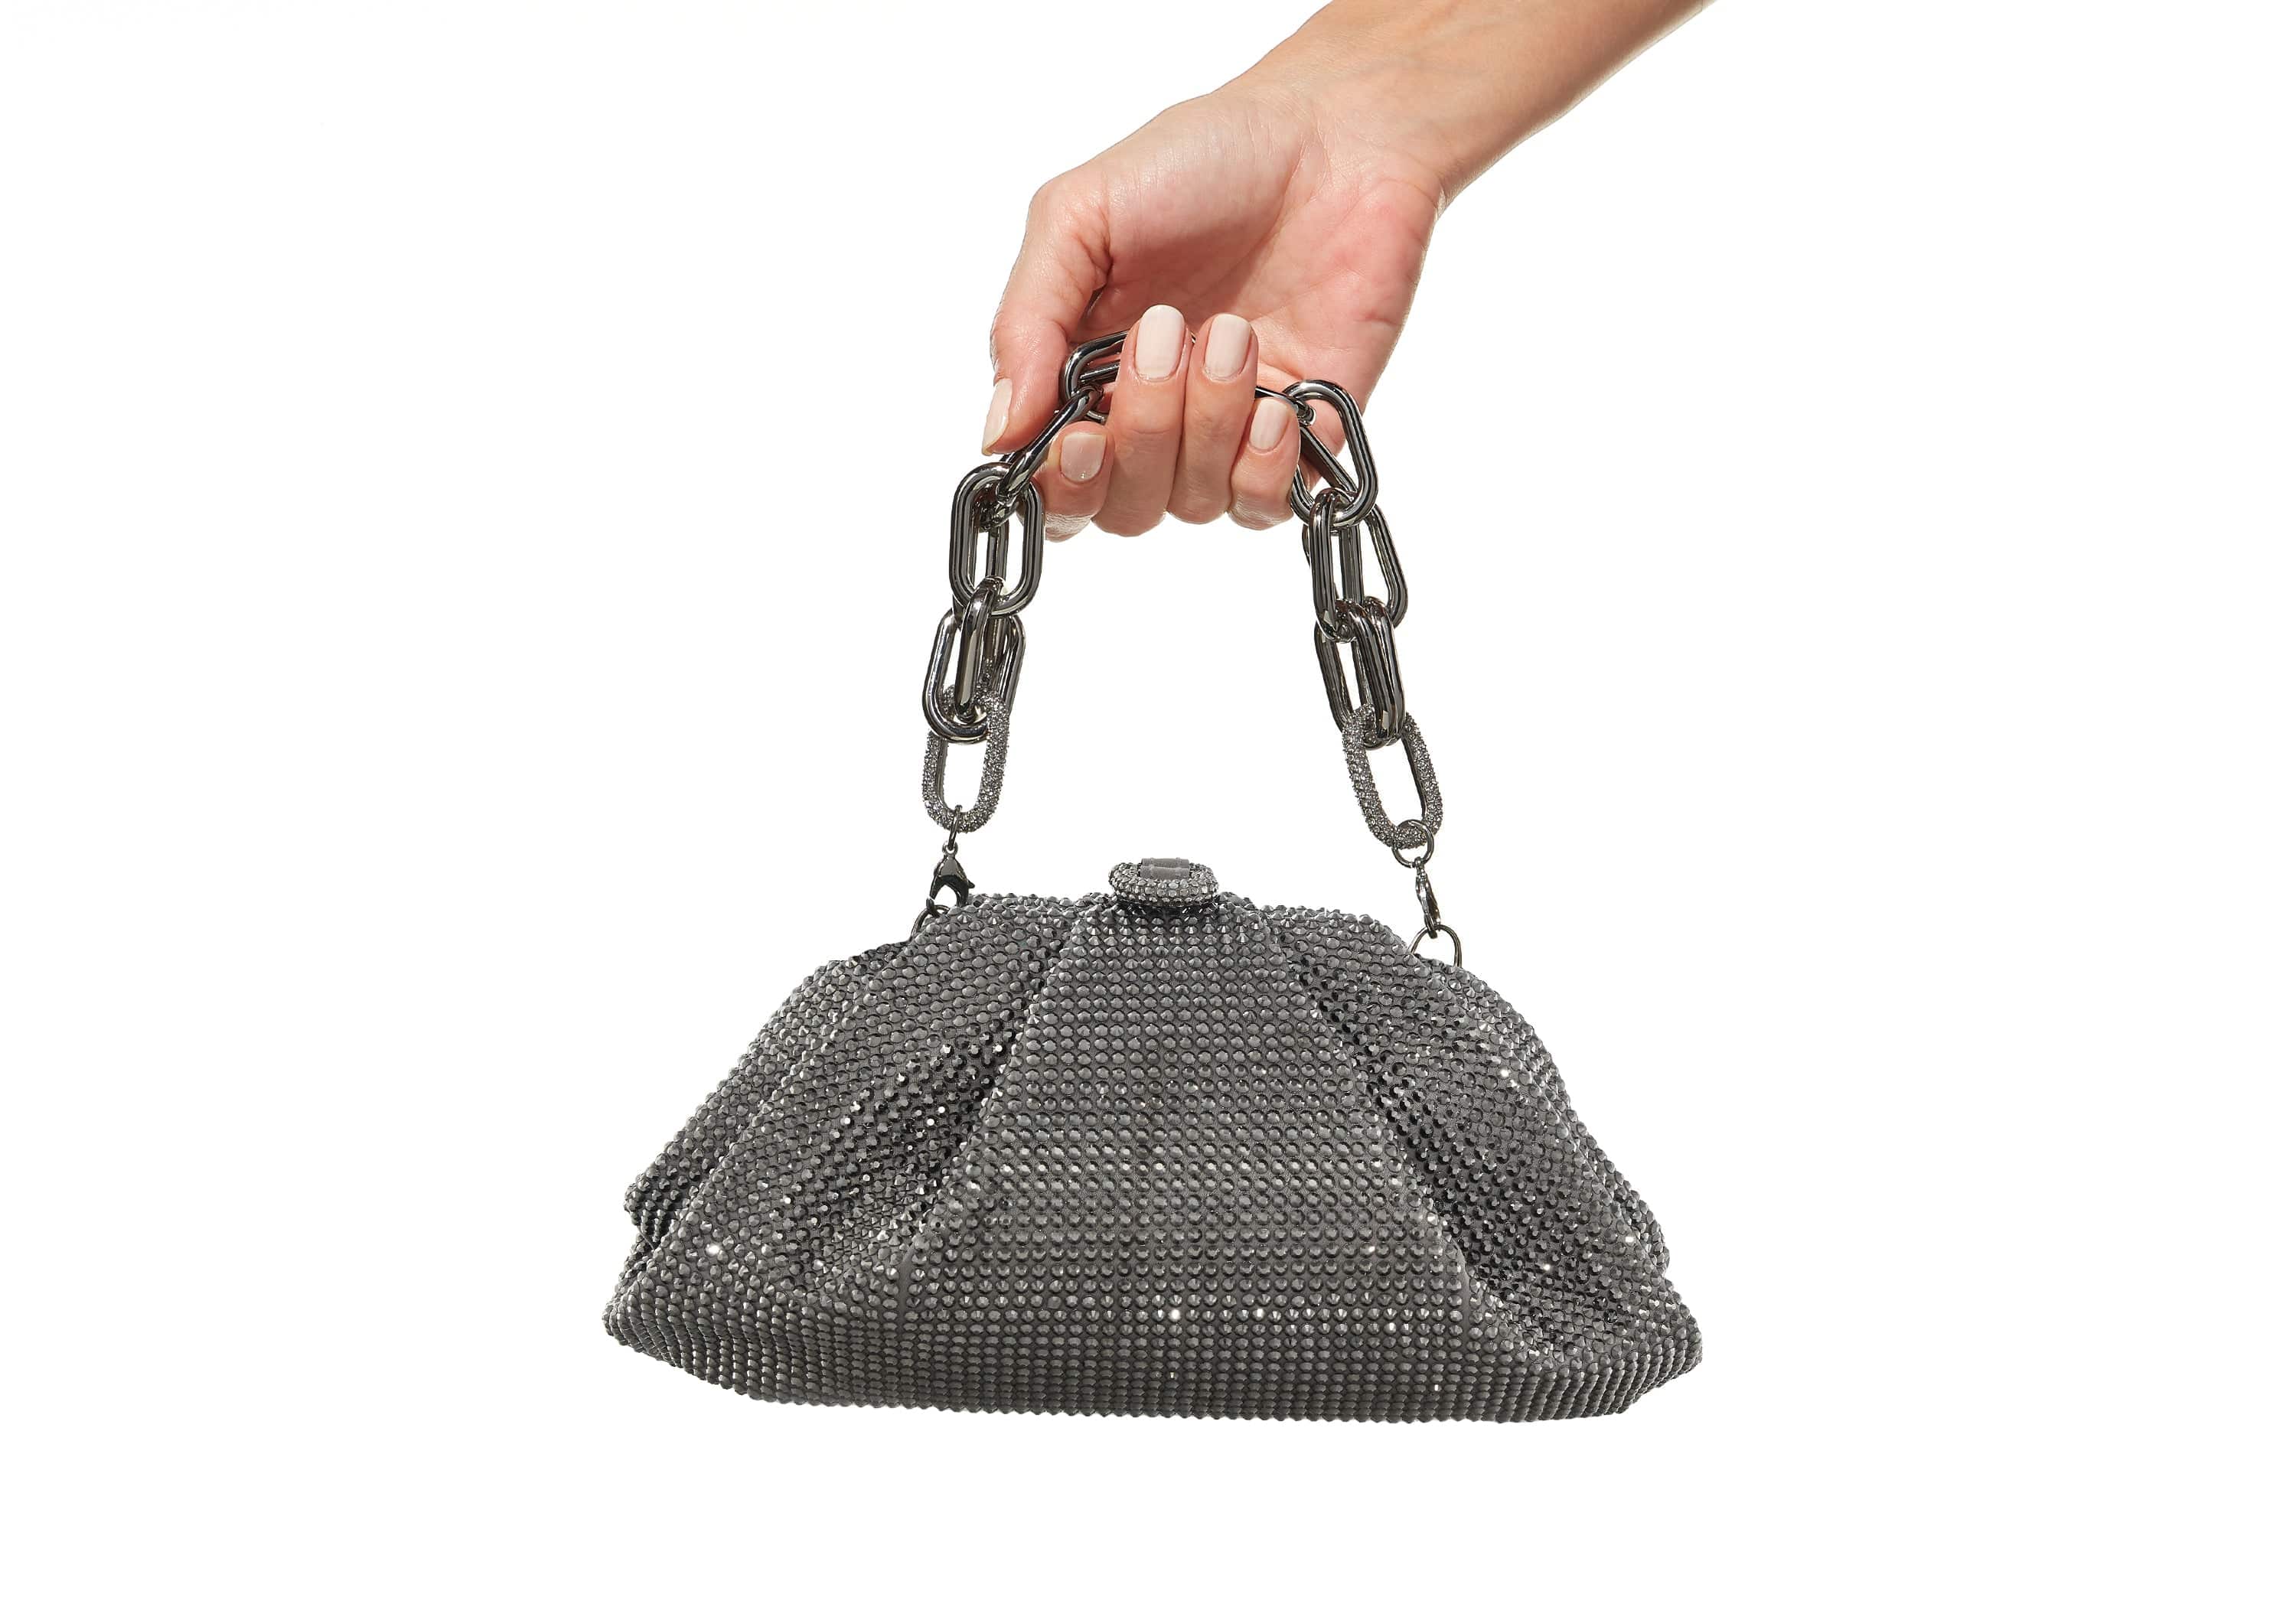 Judith Leiber Crystal Bow Clutch Bag